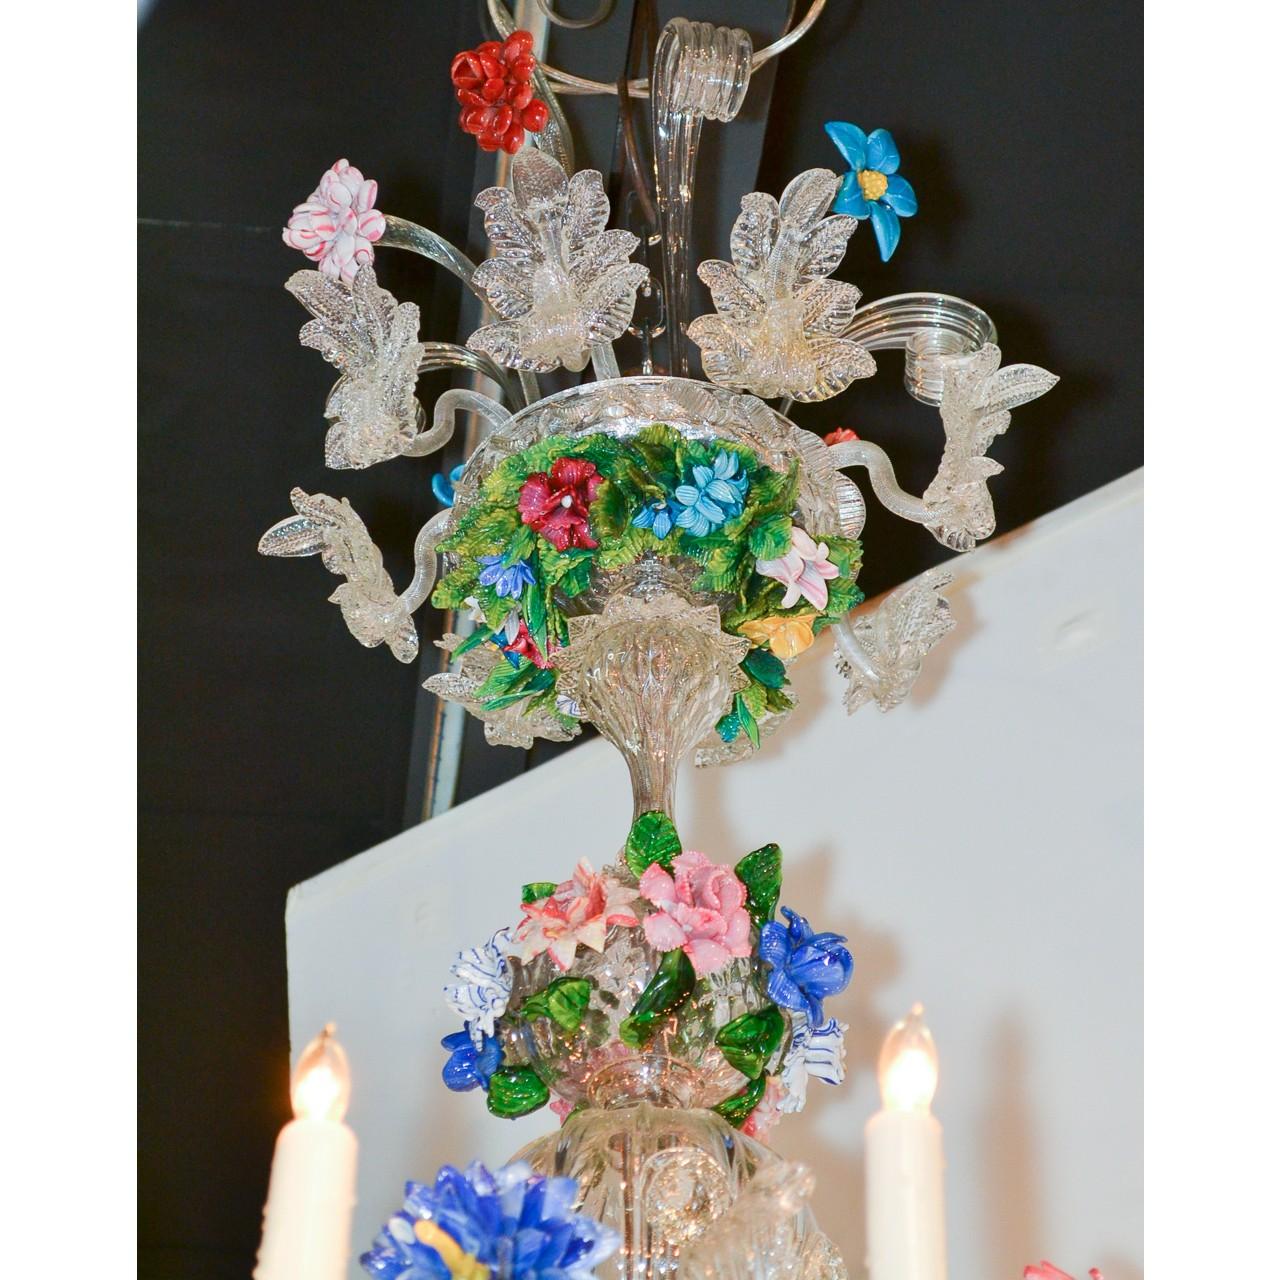 Magnifique lustre vénitien du début du 20e siècle en verre multicolore dans des teintes de vert, bleu, lavande, rouge et rose. La couronne ornée de volutes de feuilles et de gerbes de feuilles est ornée de pousses de fleurs sauvages colorées. La